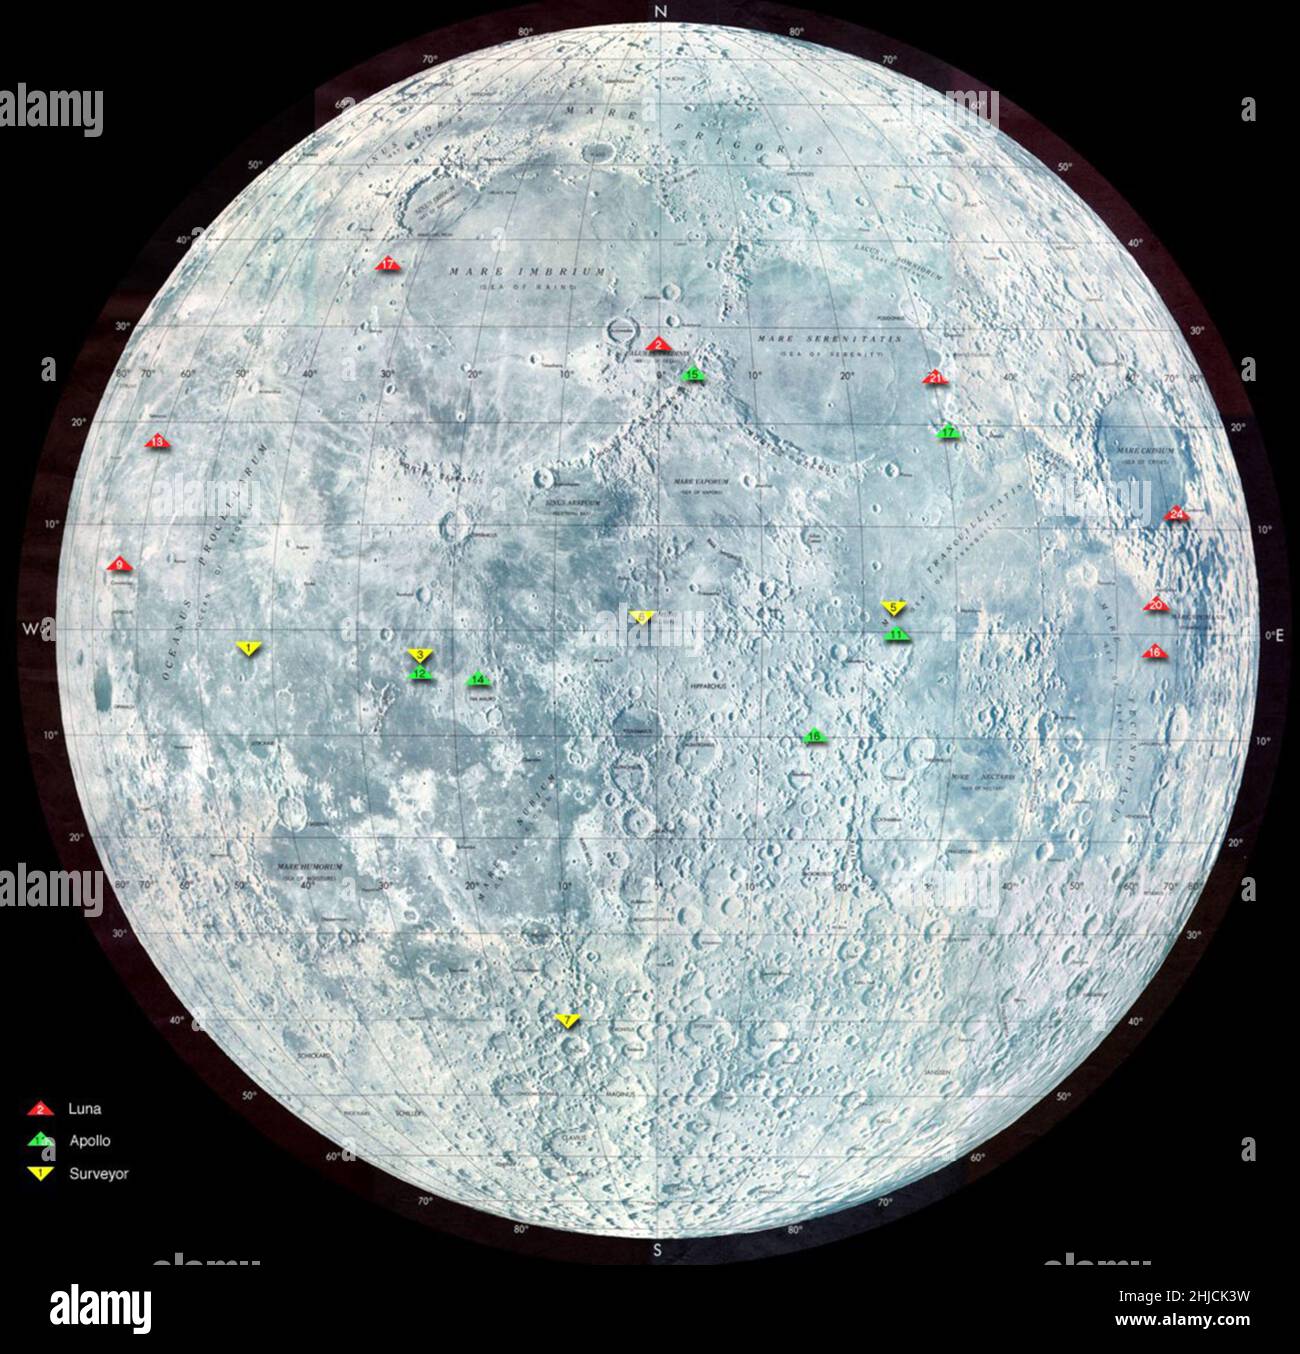 Die Karte zeigt die Standorte vieler Raumfahrzeuge, die auf dem Mond gelandet sind. Grüne Dreiecke repräsentieren Apollo-Missionen. Gelb sind NASA Surveyor-Missionen, und rot sind russische Luna-Raumfahrzeuge. Eine der Missionen des Lunar Reconnaissance Orbiter besteht darin, nach potenziellen Landeplätzen für zukünftige bemannte Missionen zum Mond zu suchen. Stockfoto